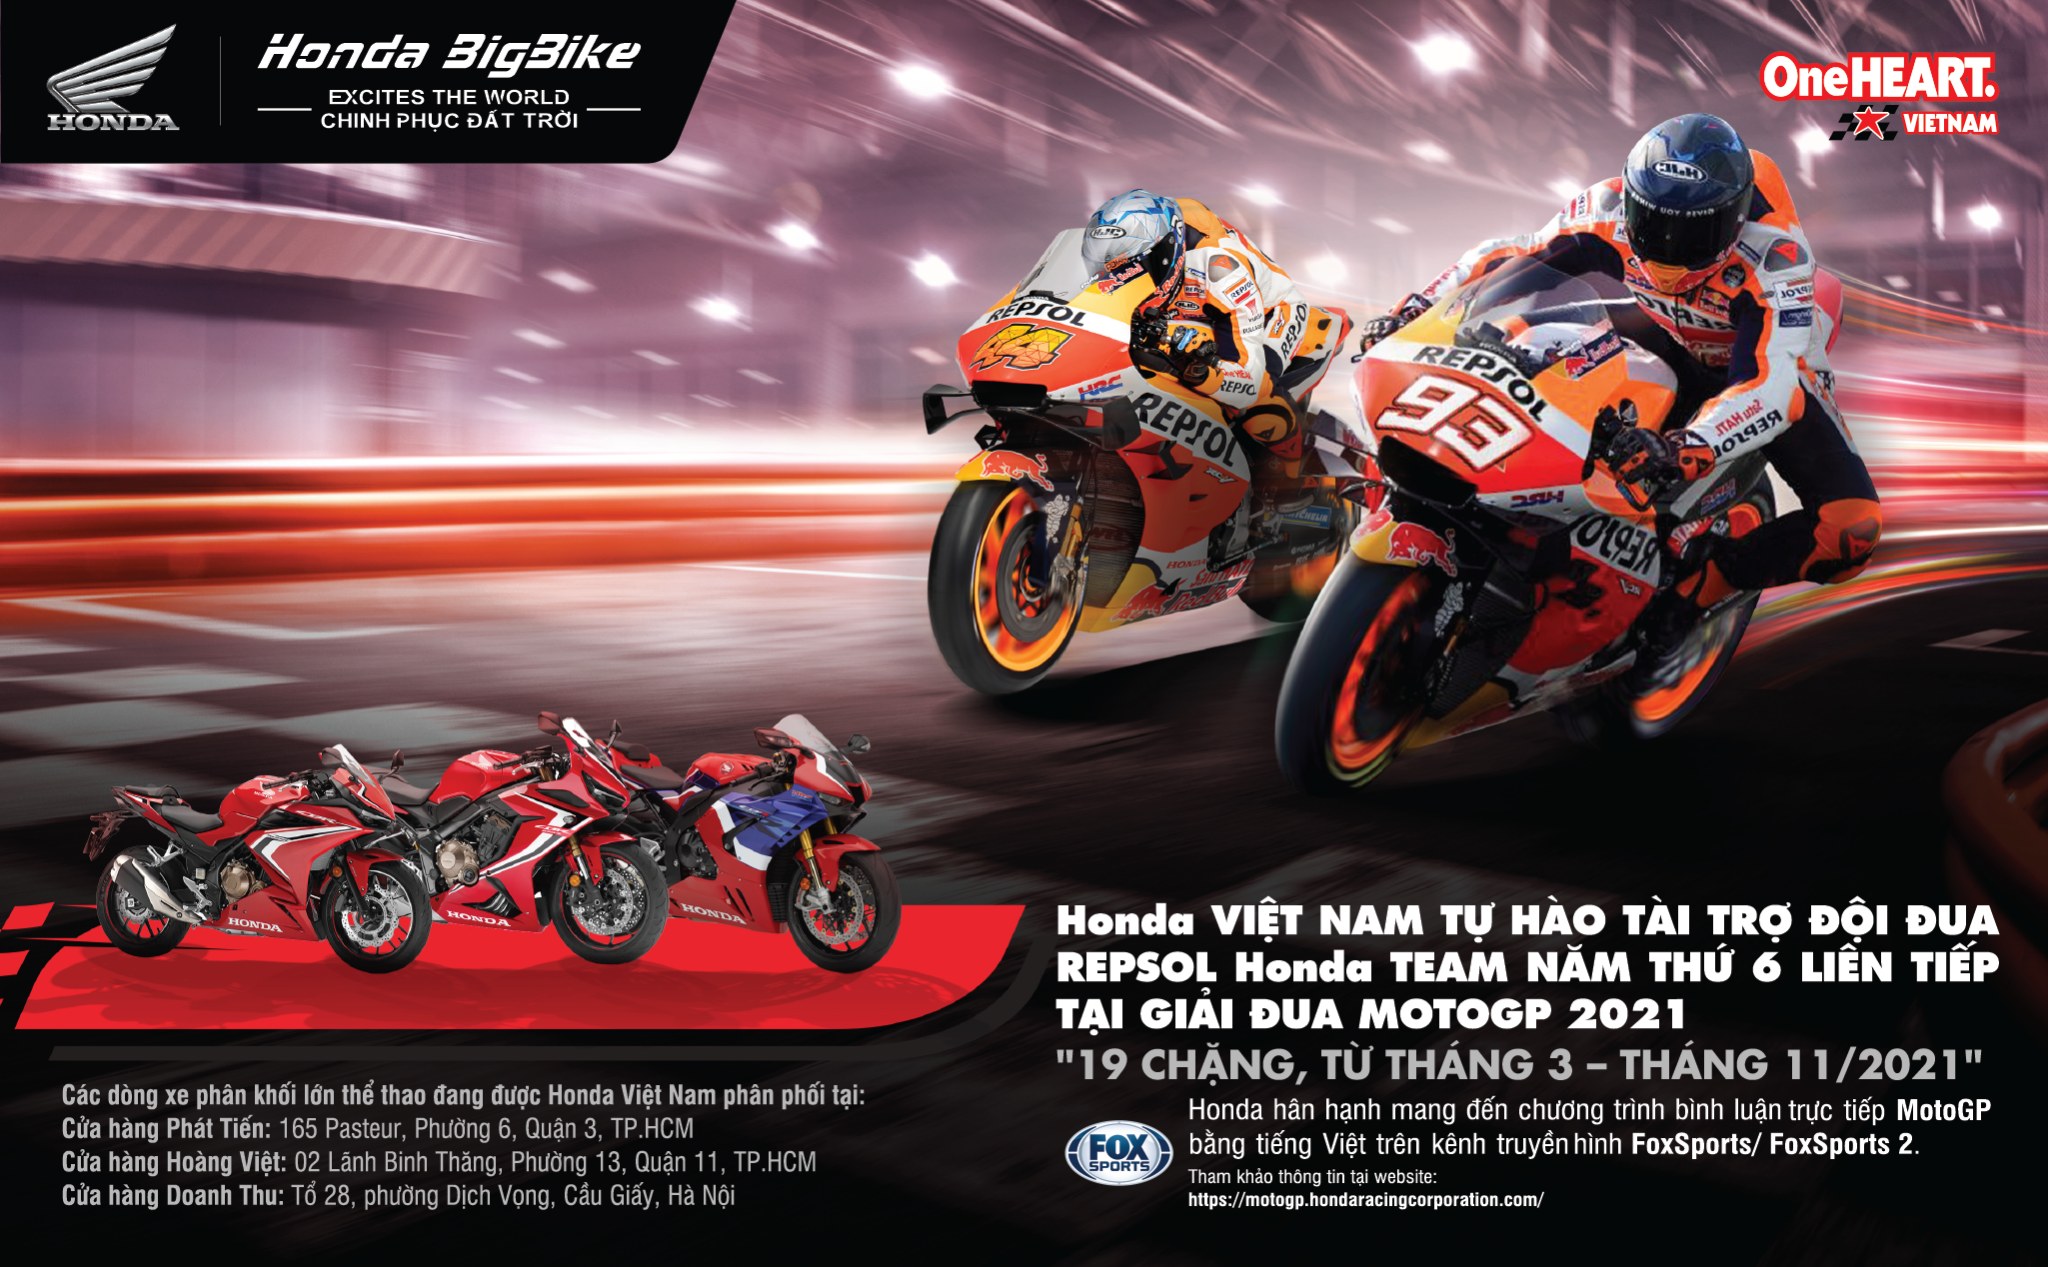 [QC] Honda Việt Nam tiếp tục tài trợ cho Moto GP và kỳ tích mới của đội đua Honda Repsol